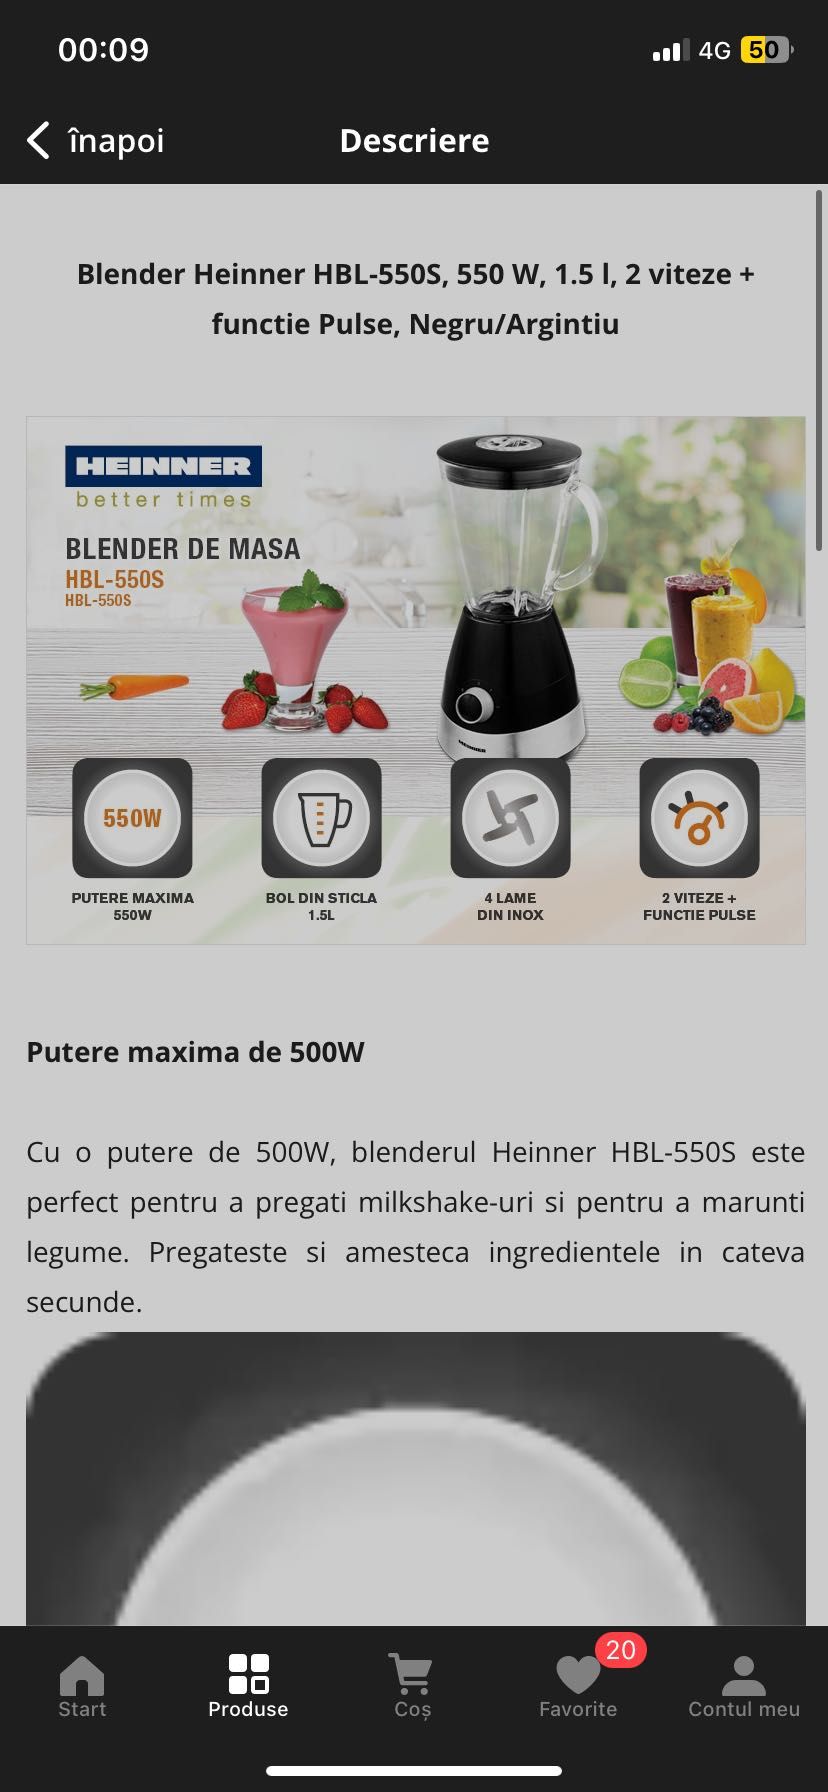 Blender Heinner HBL 550s, 550w